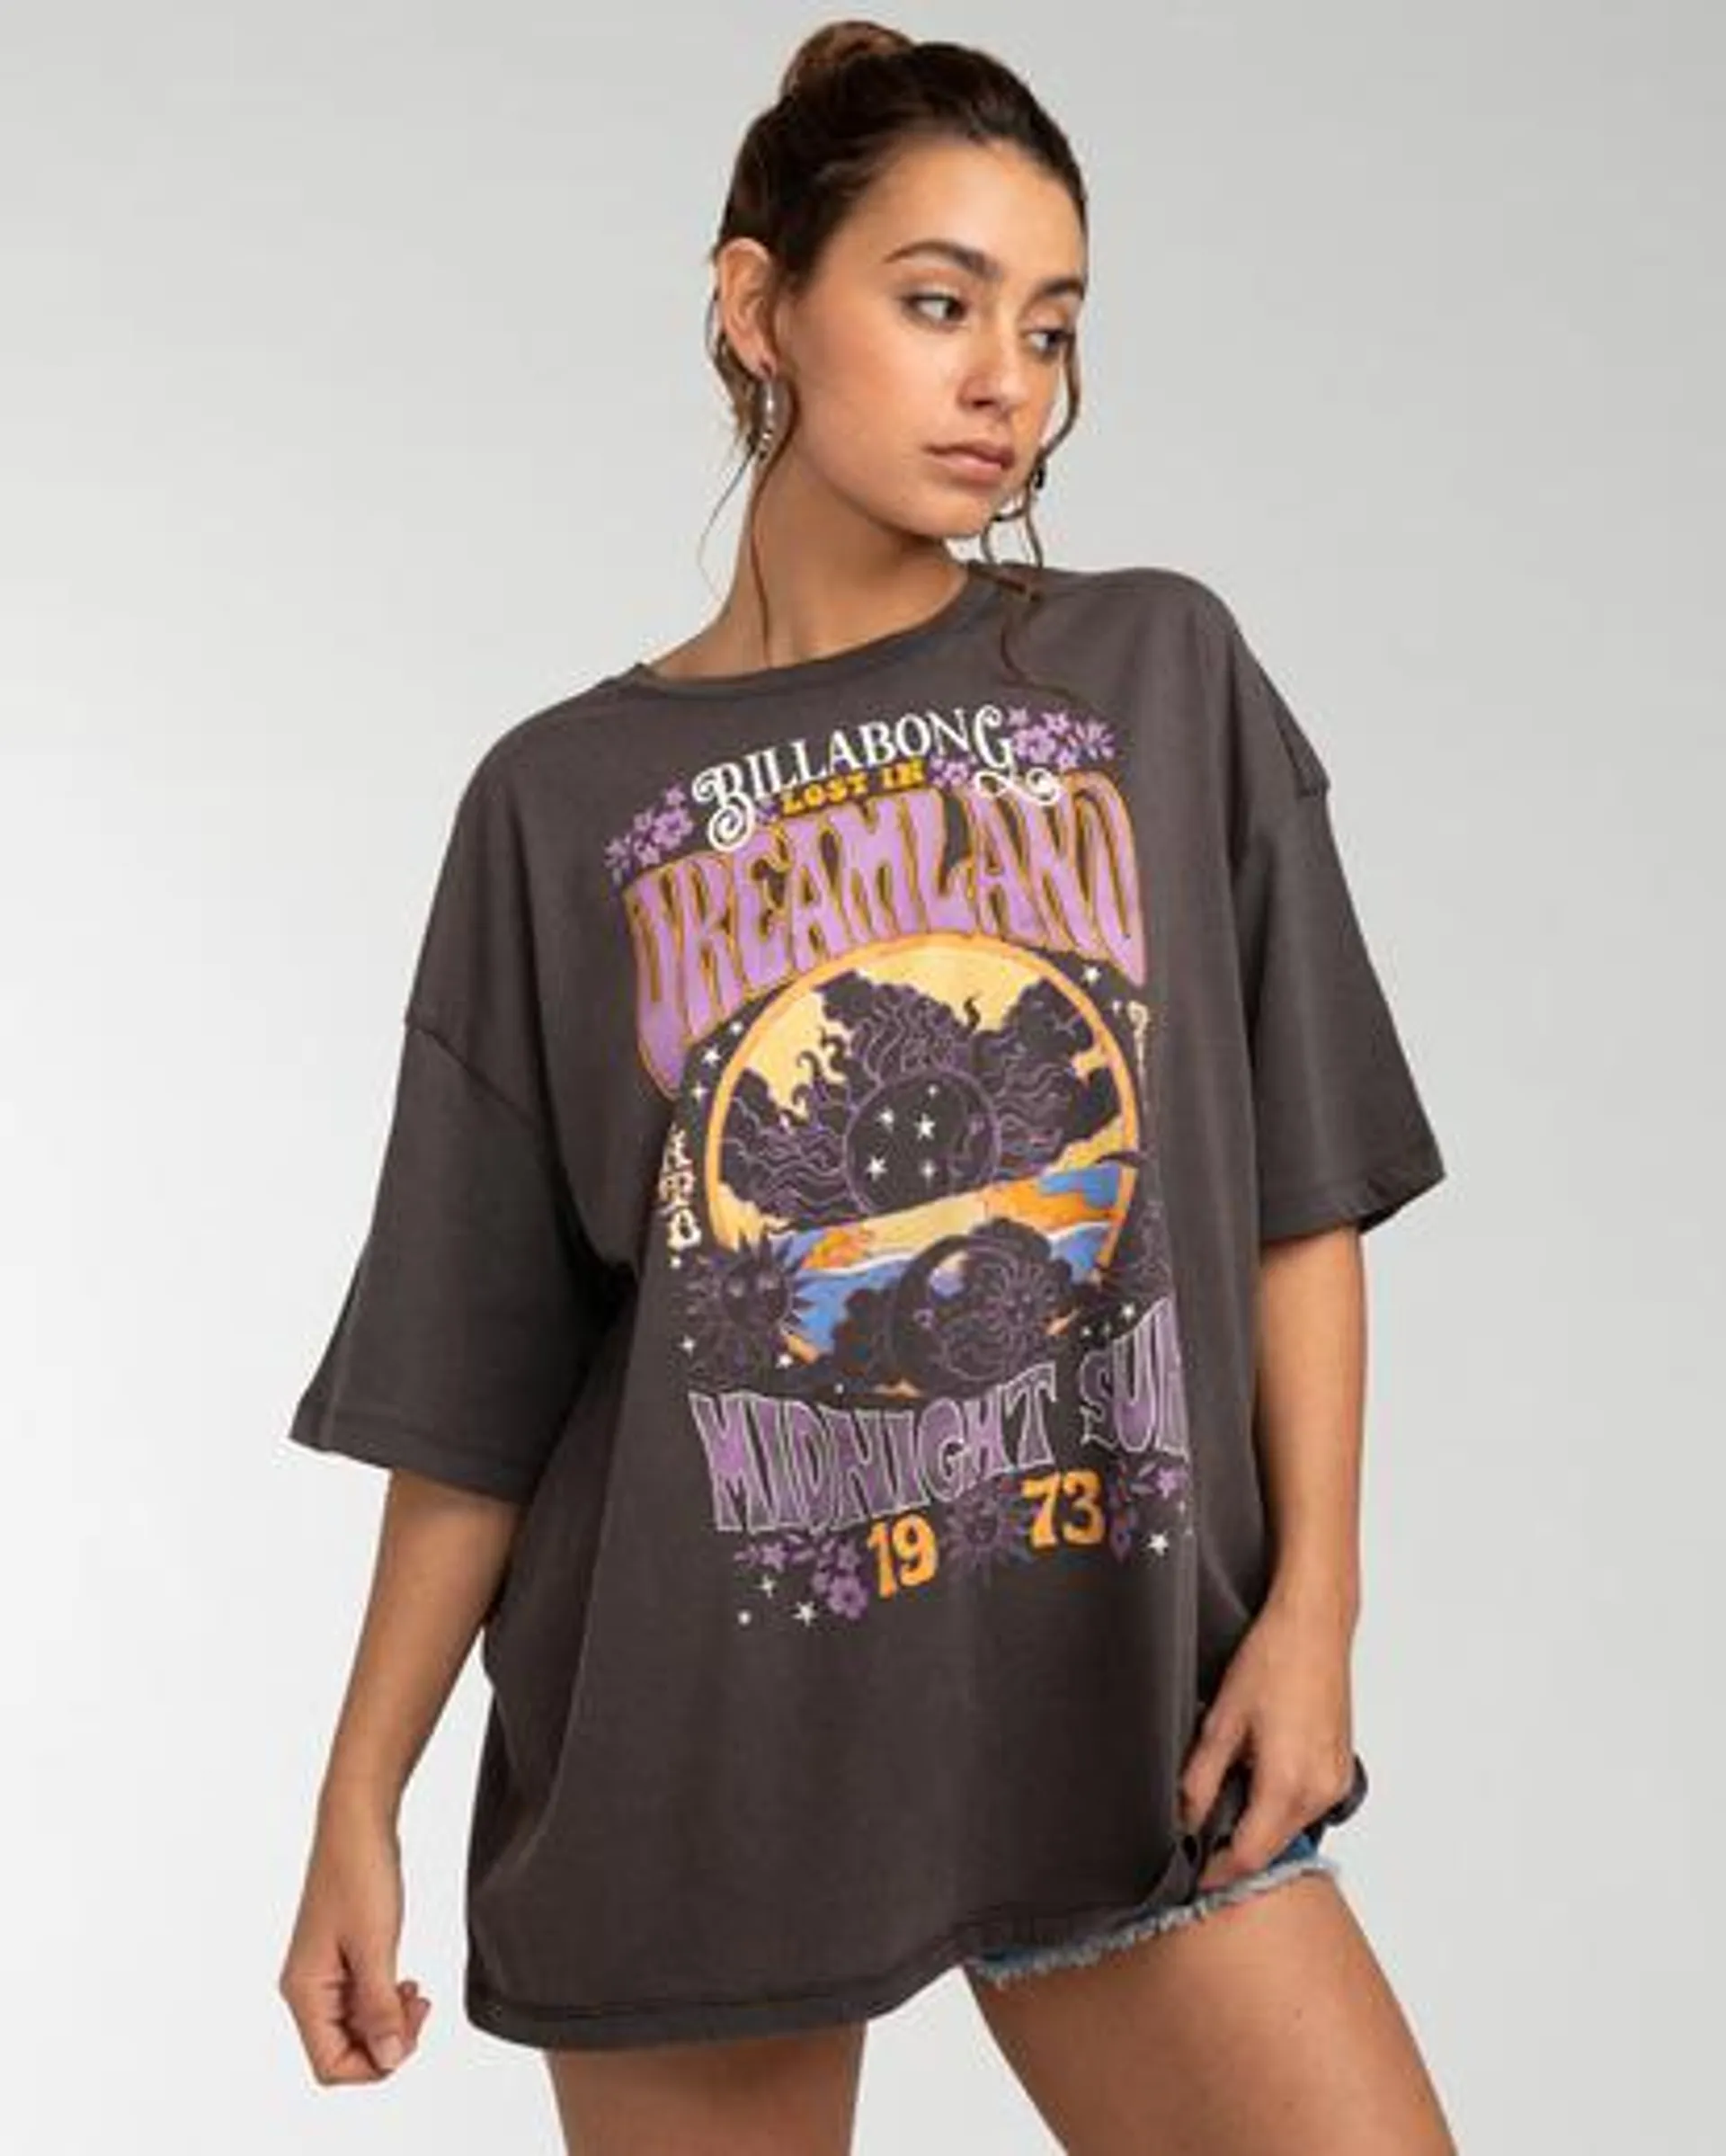 Dreamland - T-shirt pour Femme